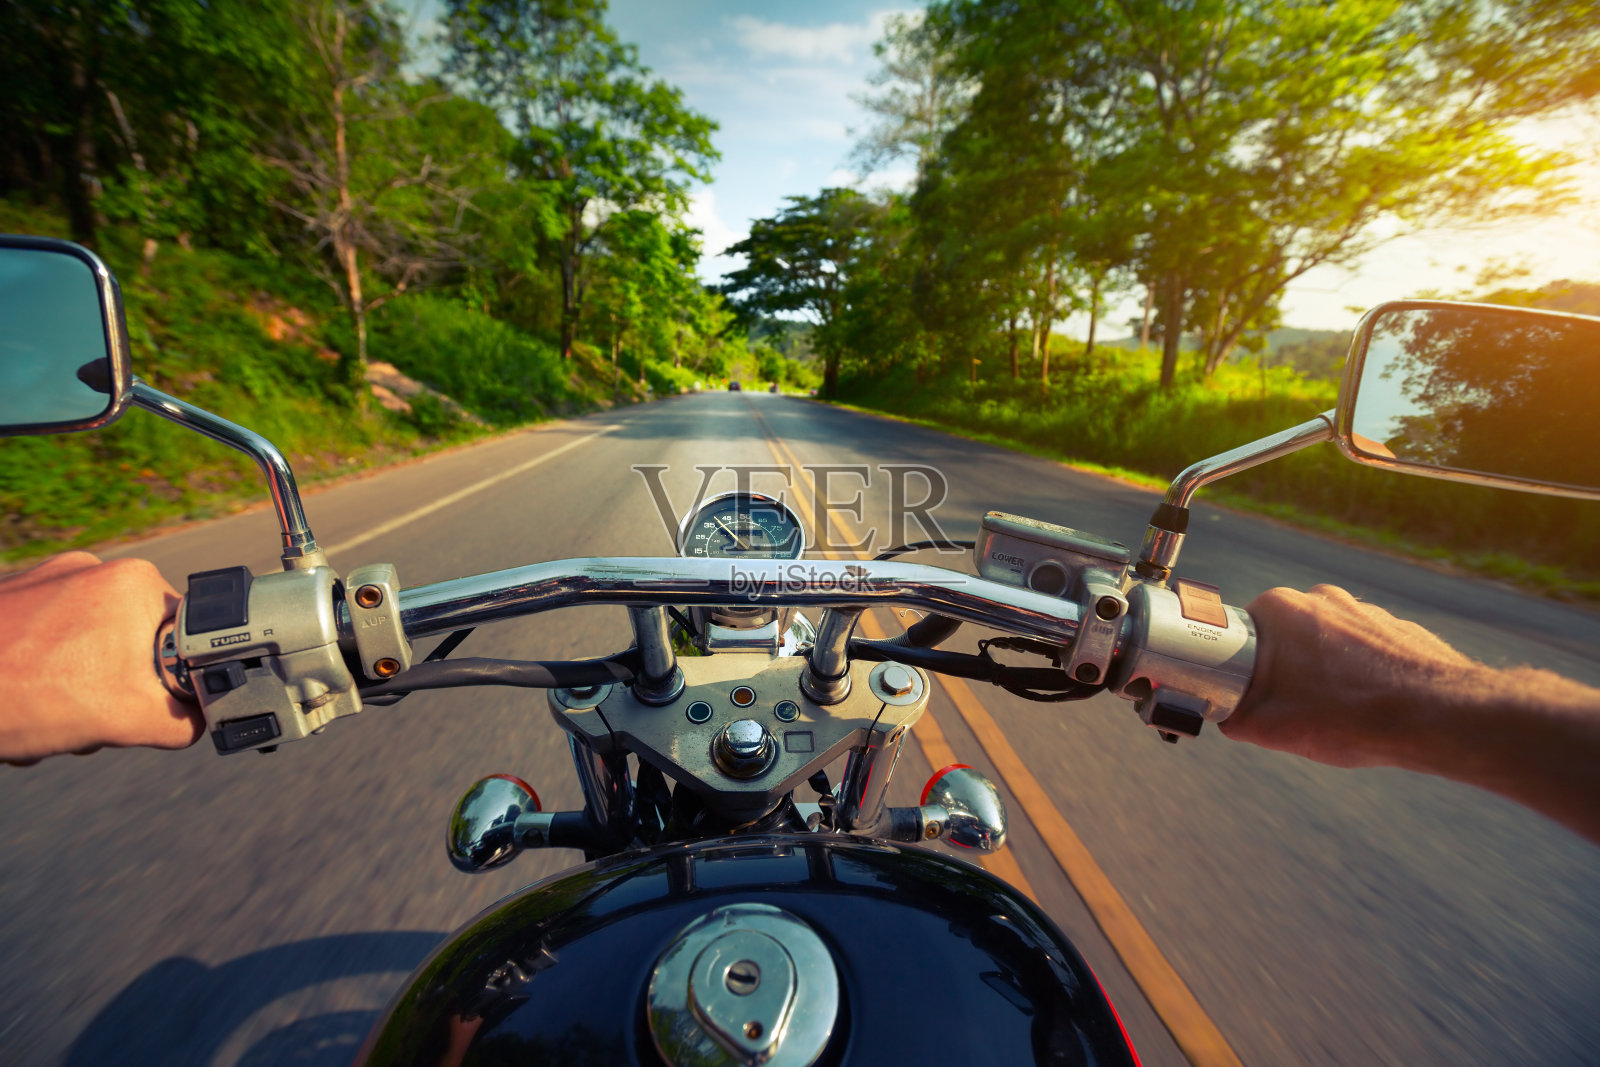 Motocycle照片摄影图片